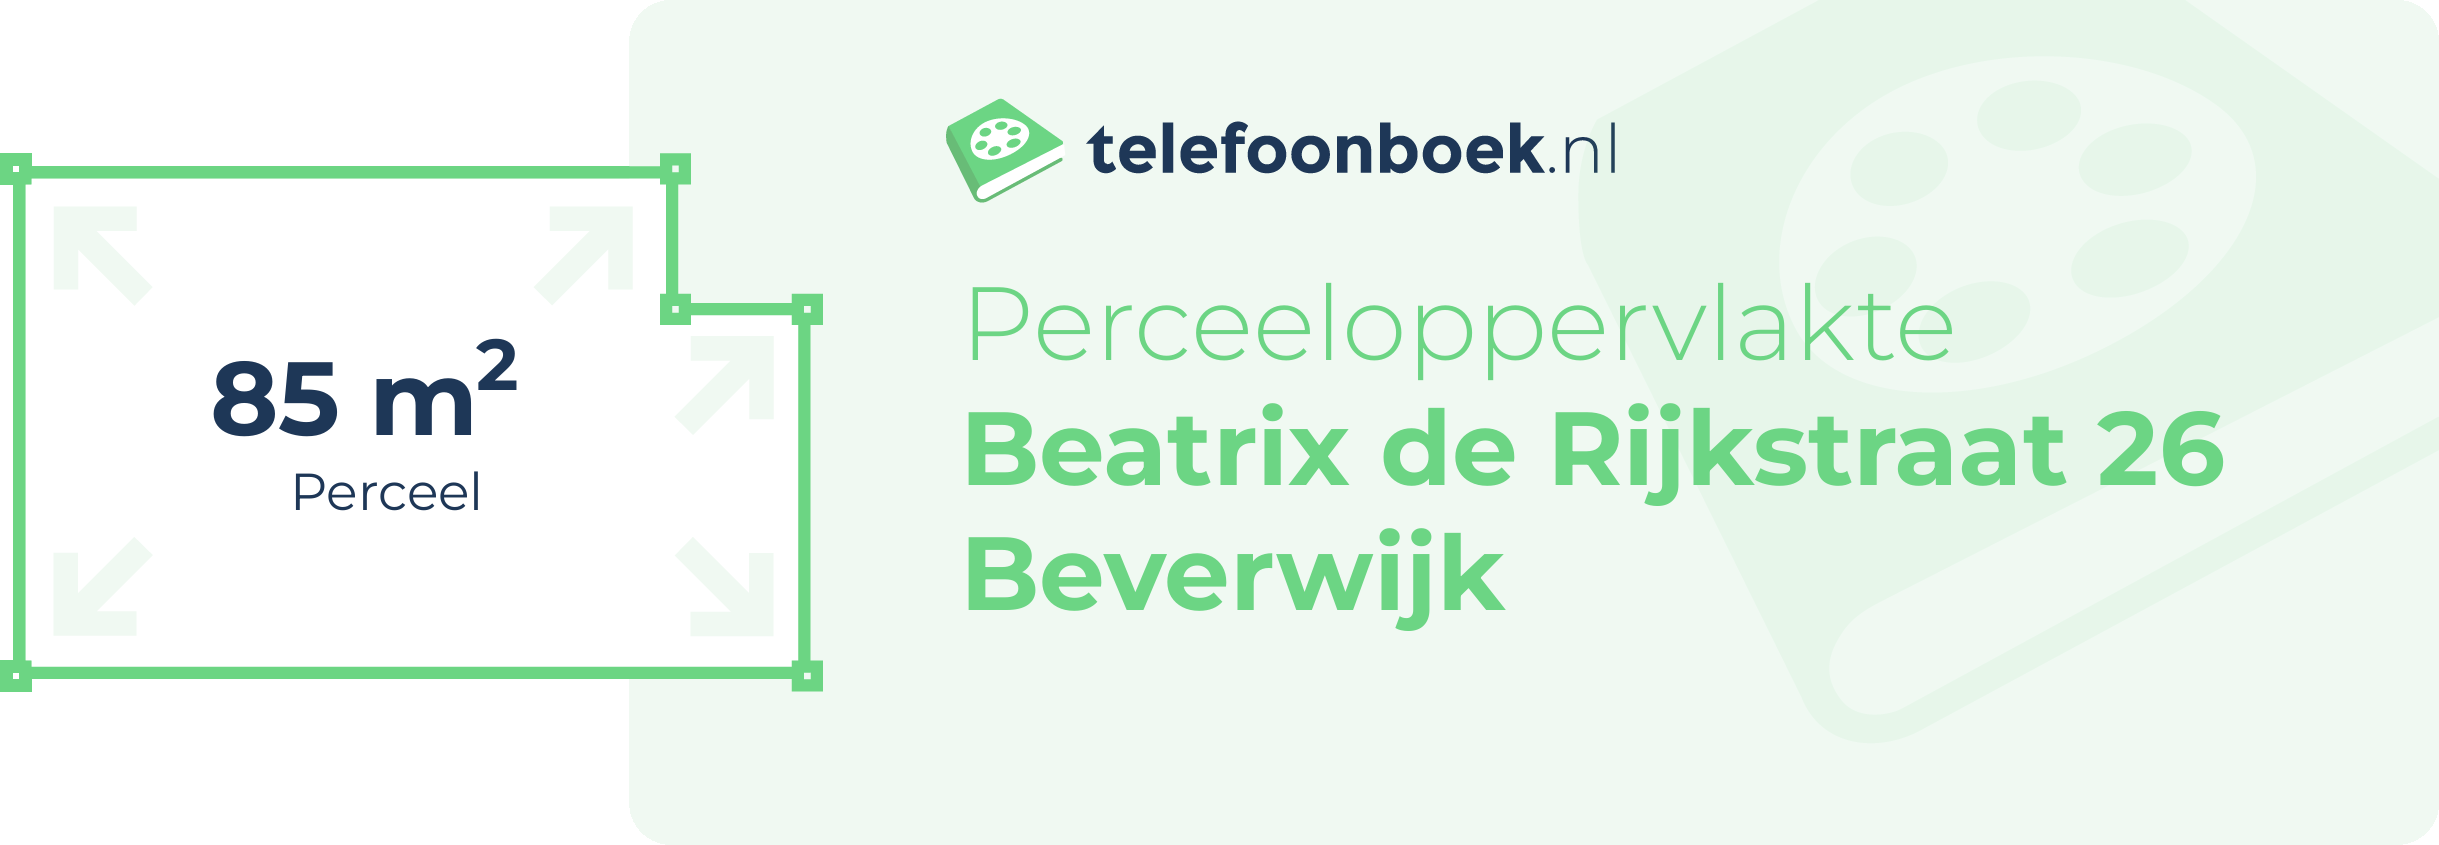 Perceeloppervlakte Beatrix De Rijkstraat 26 Beverwijk